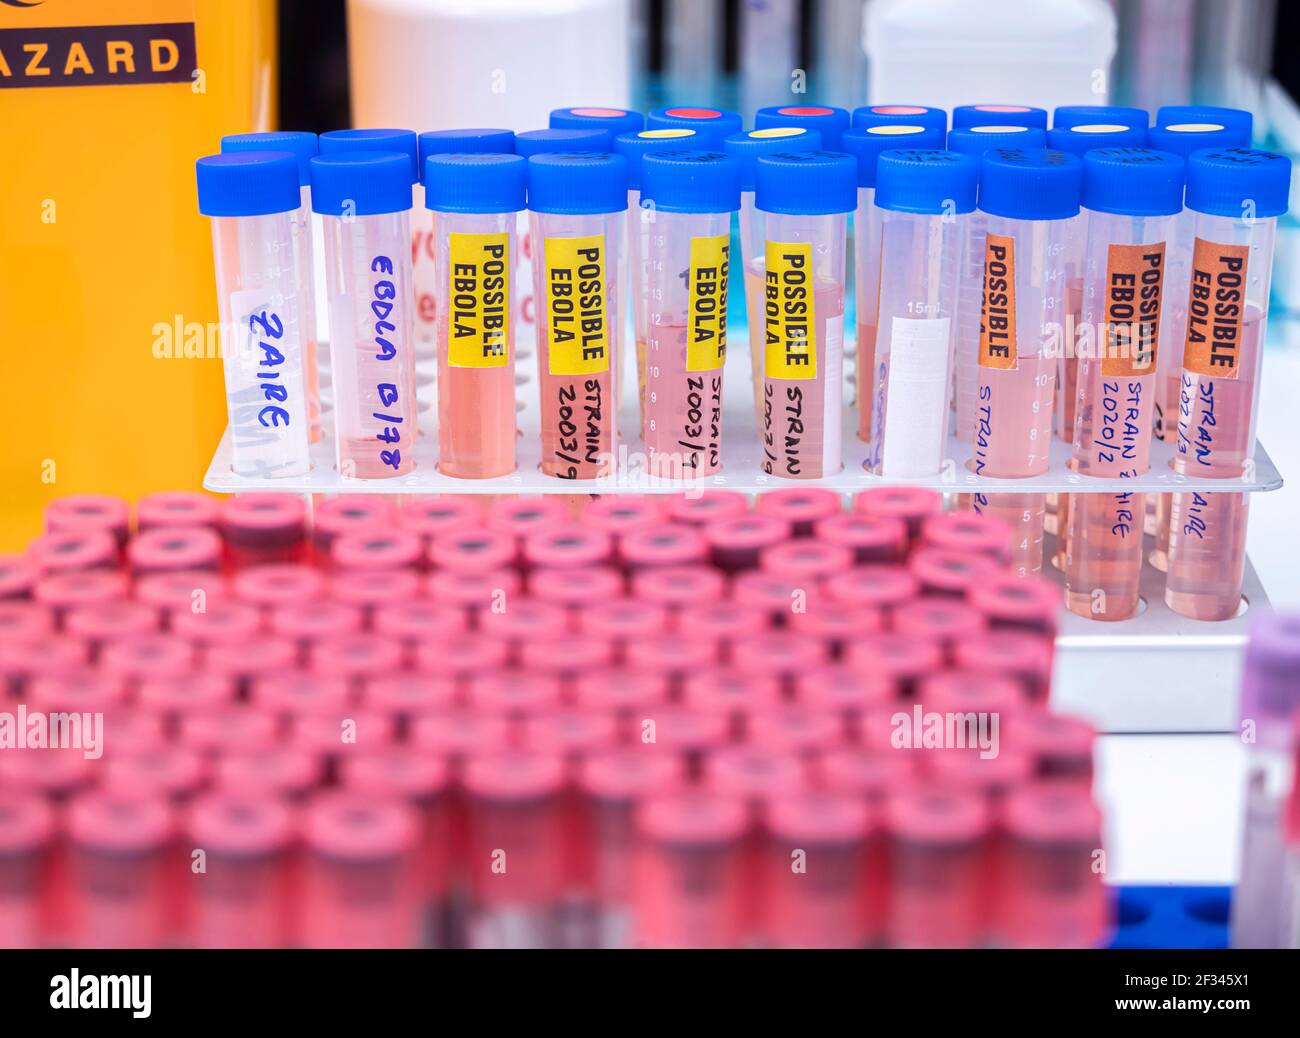 Probenfläschchen möglicher Ebola-Patienten, die mit dem neuen Zaire-Stamm von Ebola infiziert sind, Konzeptbild Stockfoto